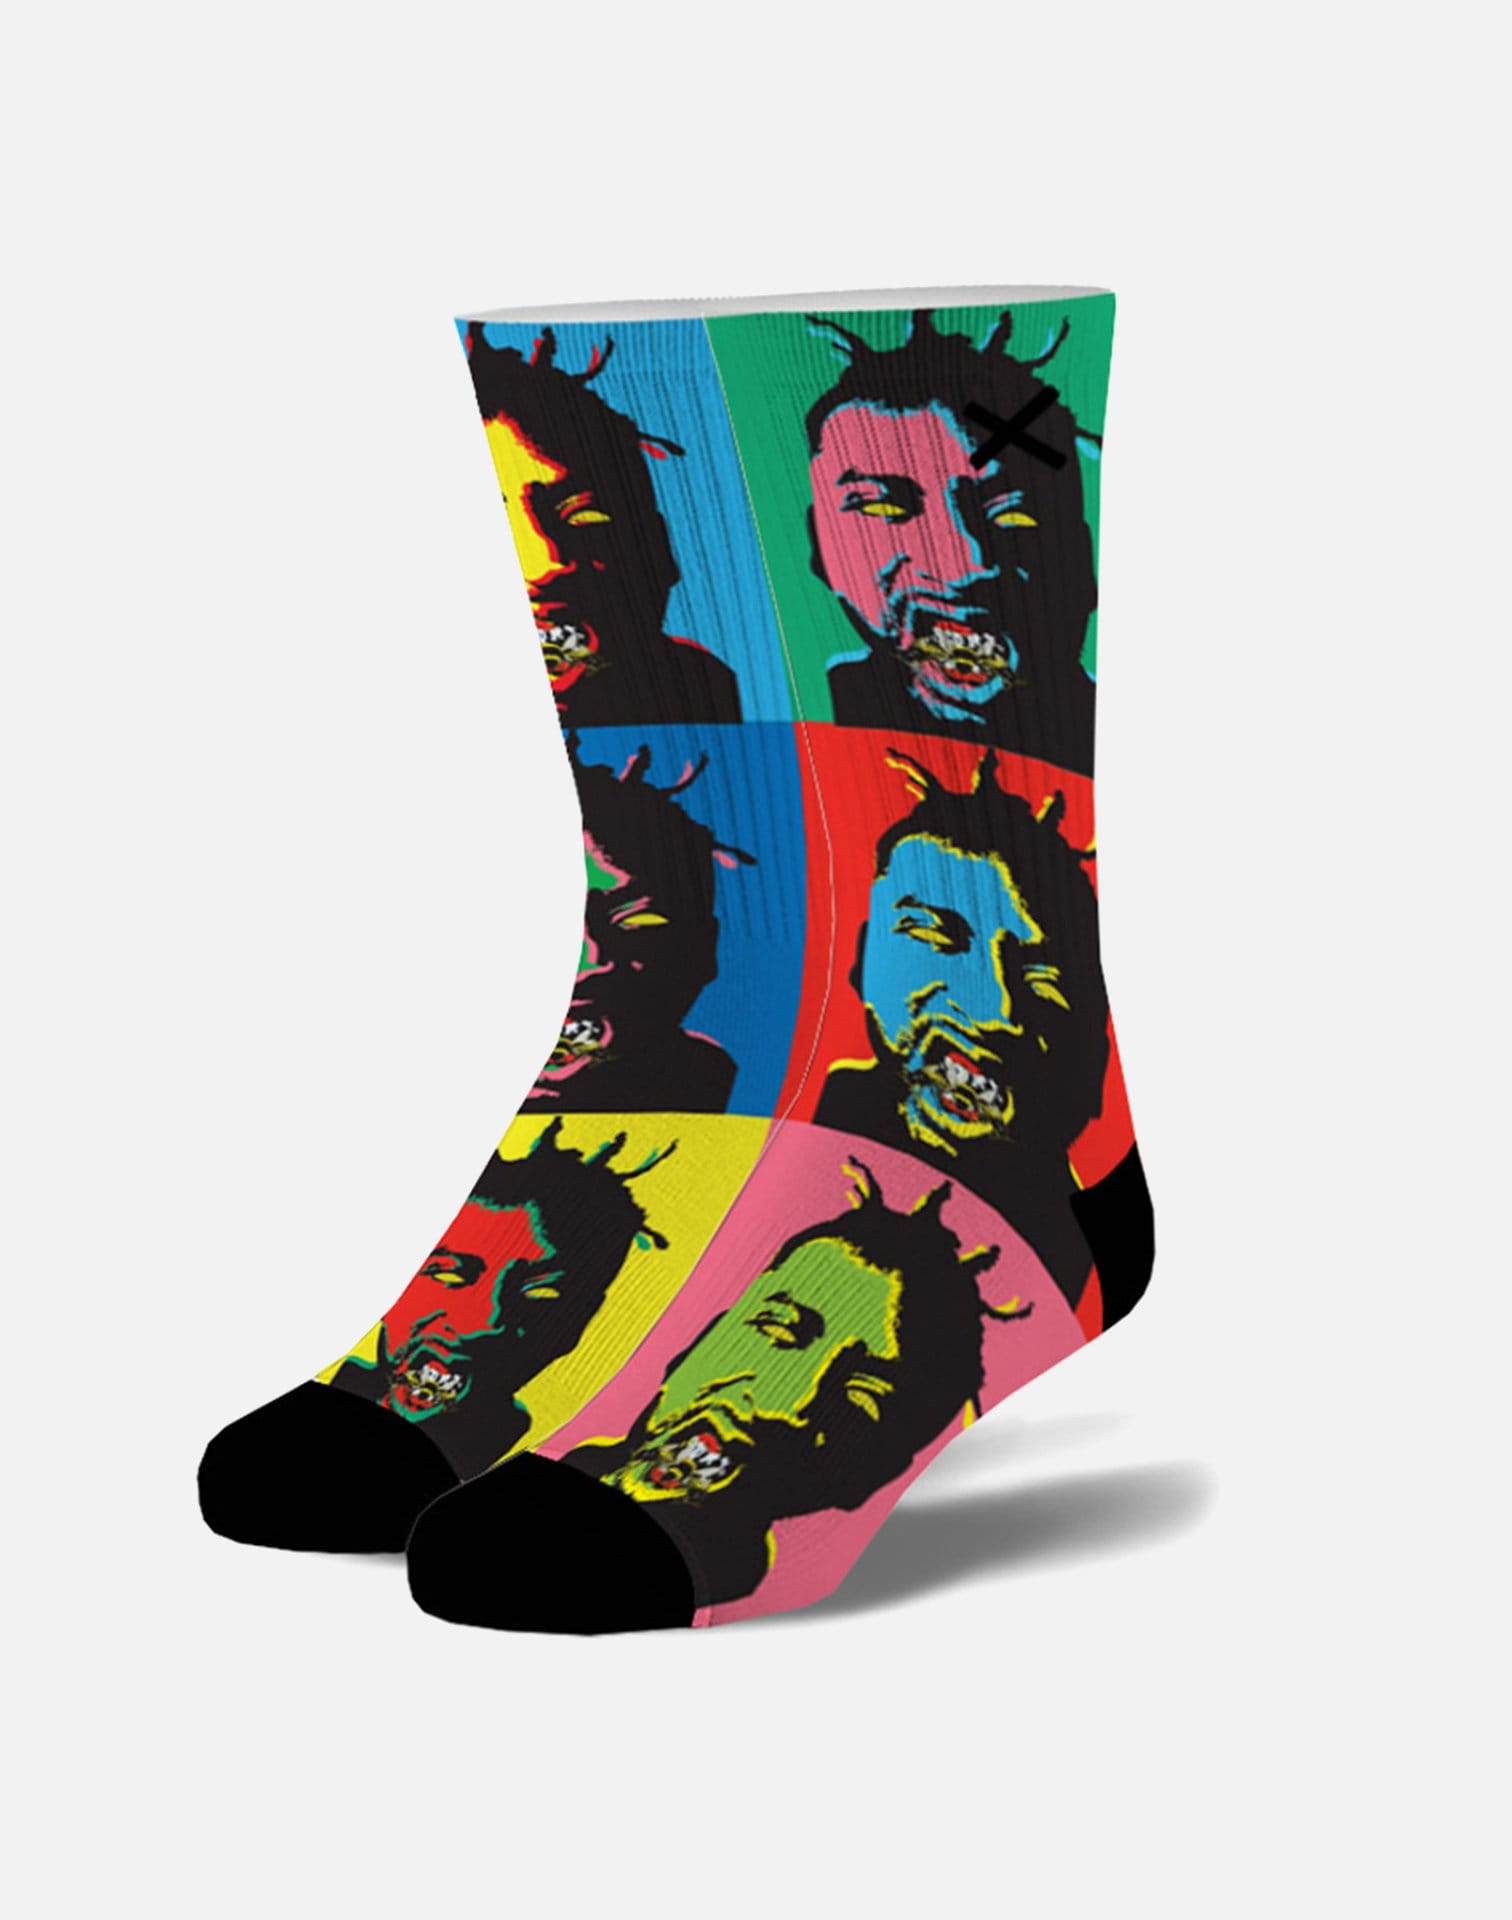 Odd Sox Dirty ODB Pop Art Socks